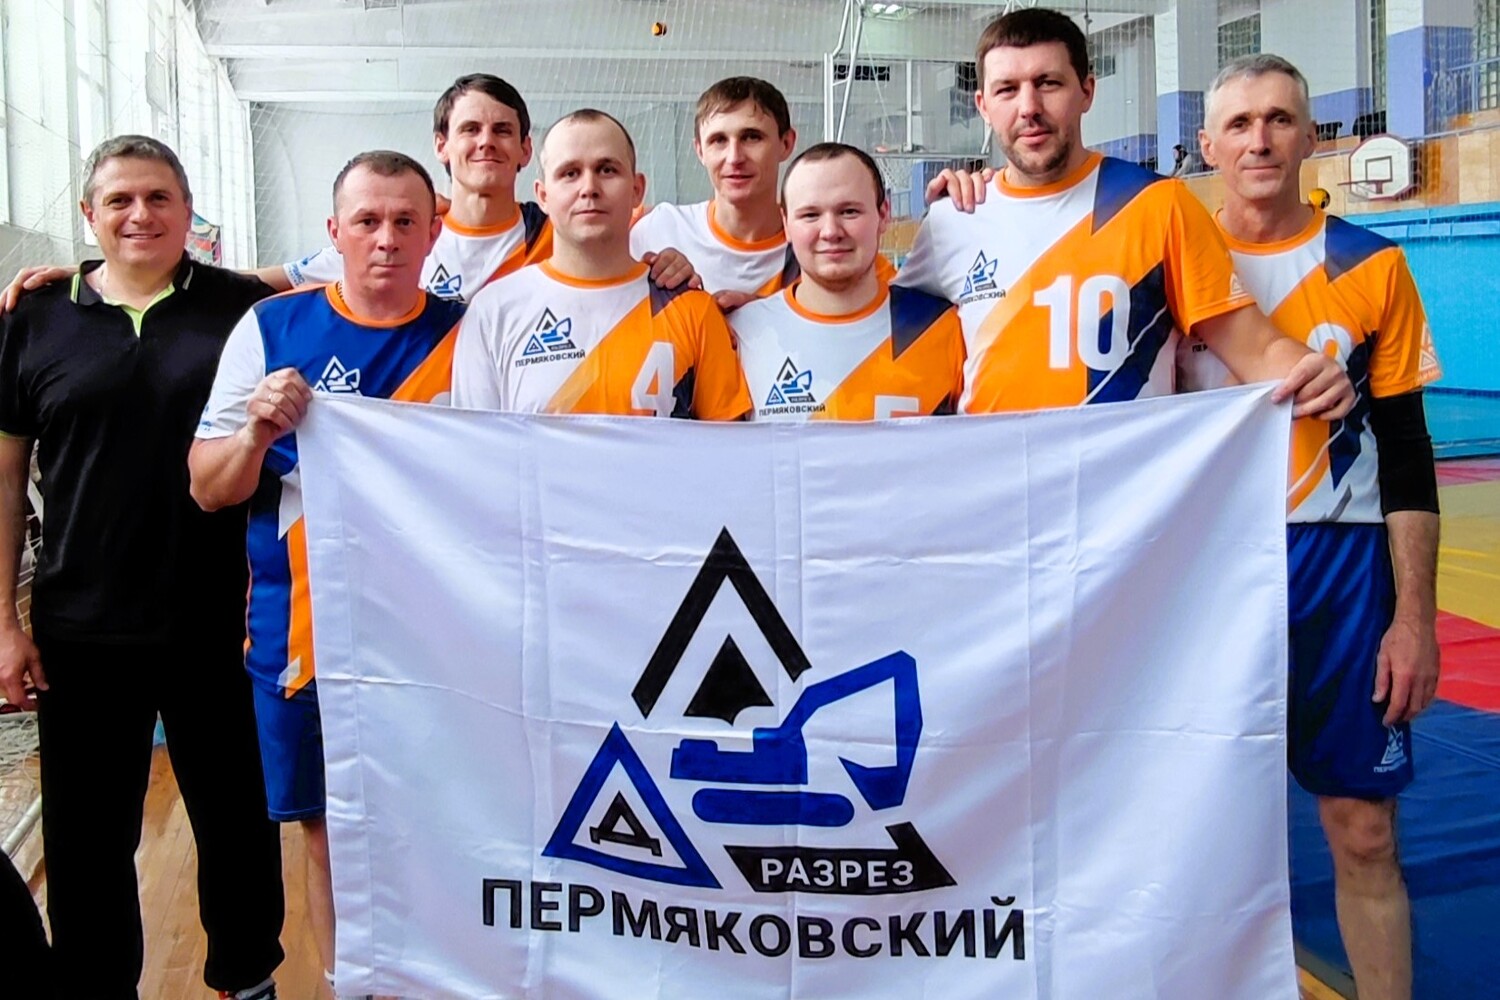 Разрез «Пермяковский» занял 1 место на соревнованиях по волейболу среди угольщиков